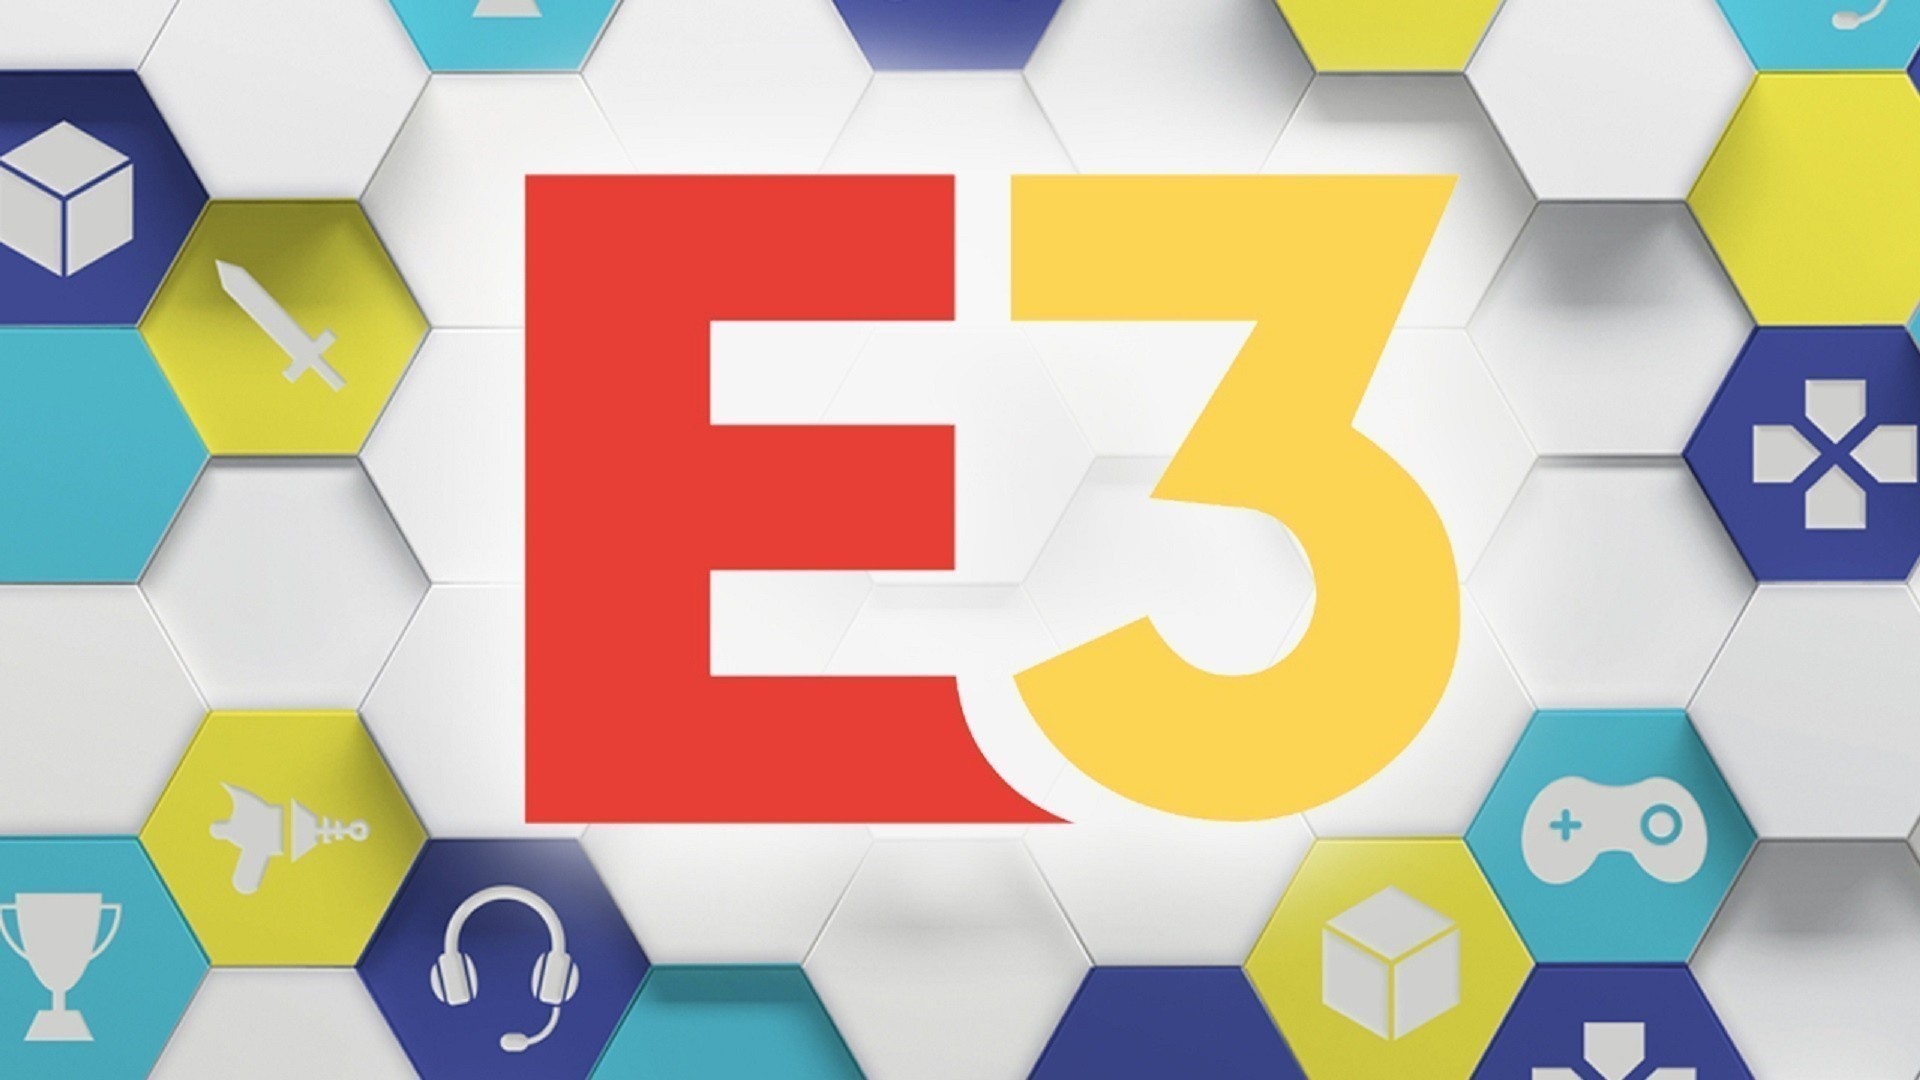 Targi E3 oficjalnie odwołane, powrócą w 2023 roku